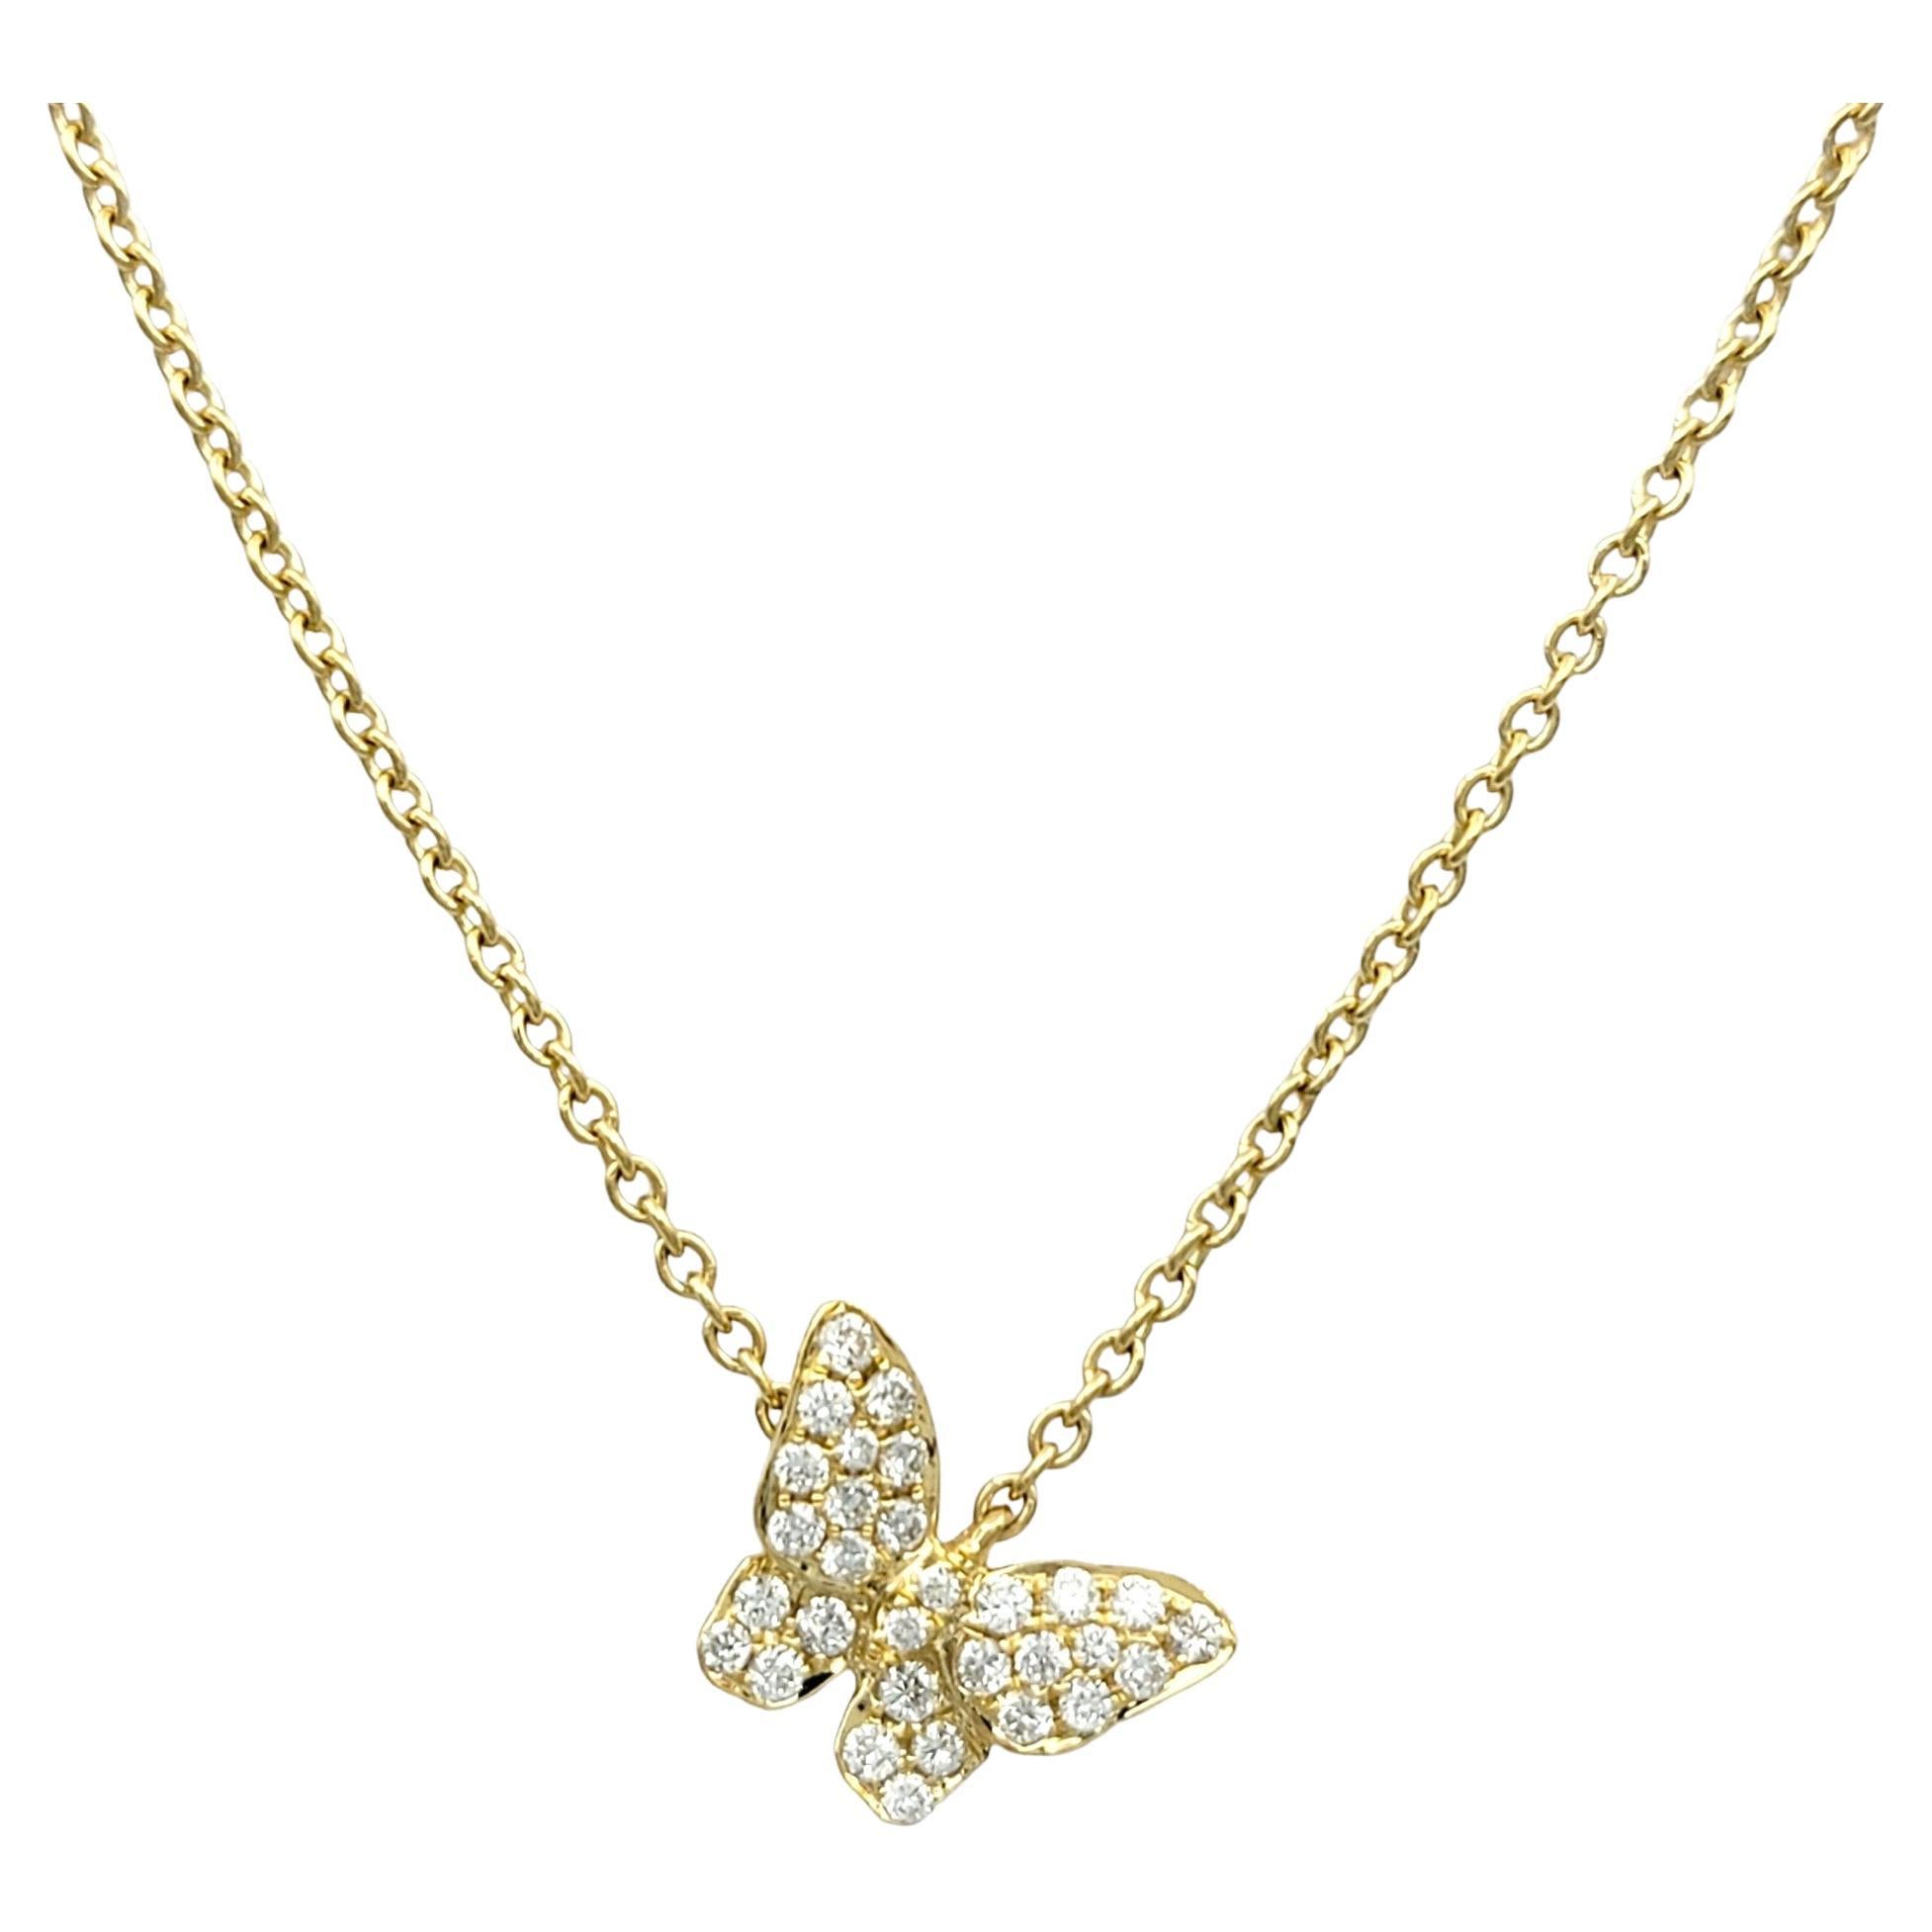 Pavé Diamond Stationary Butterfly Pendant Necklace Set in 18 Karat Yellow Gold